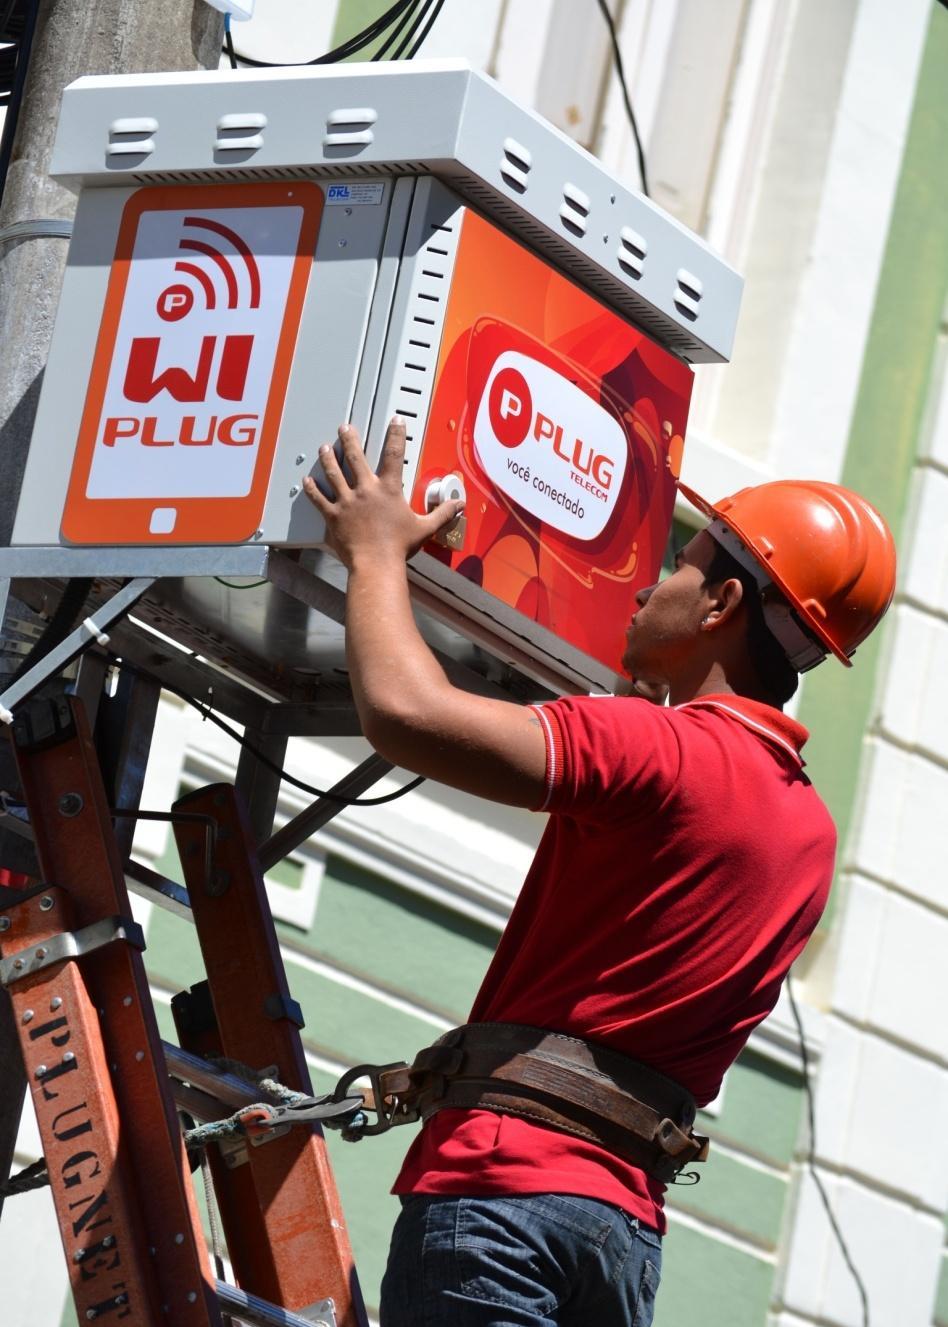 Wi-Fi Free Provedores Regionais Inovando Serviço Wi-Fi em praças públicas Gratuito para clientes do provedor (30